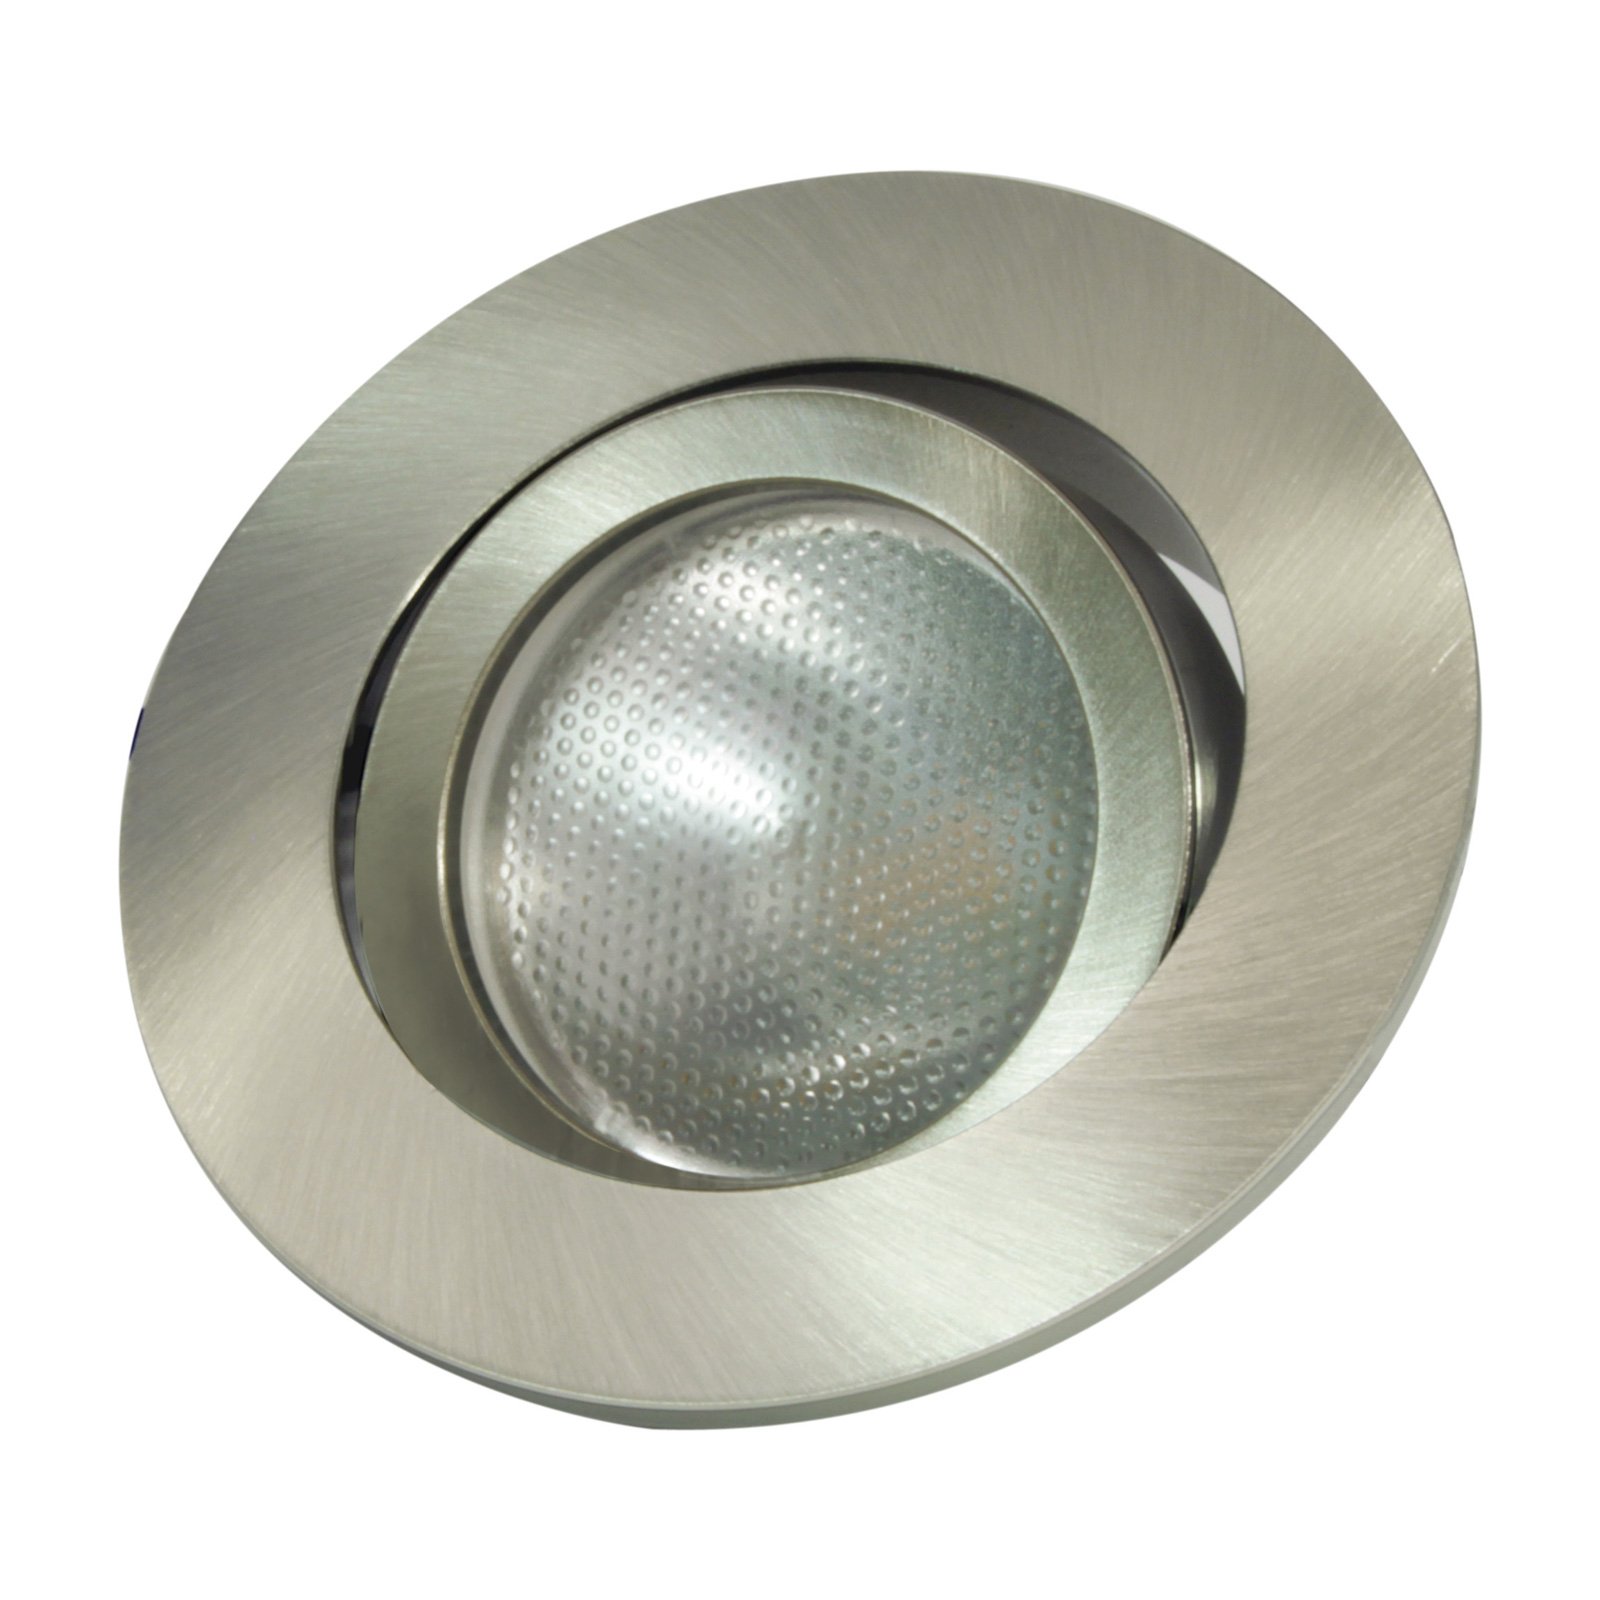 LED įleidžiamas žiedas Decoclic GU10/GU5.3, apvalus, geležinis